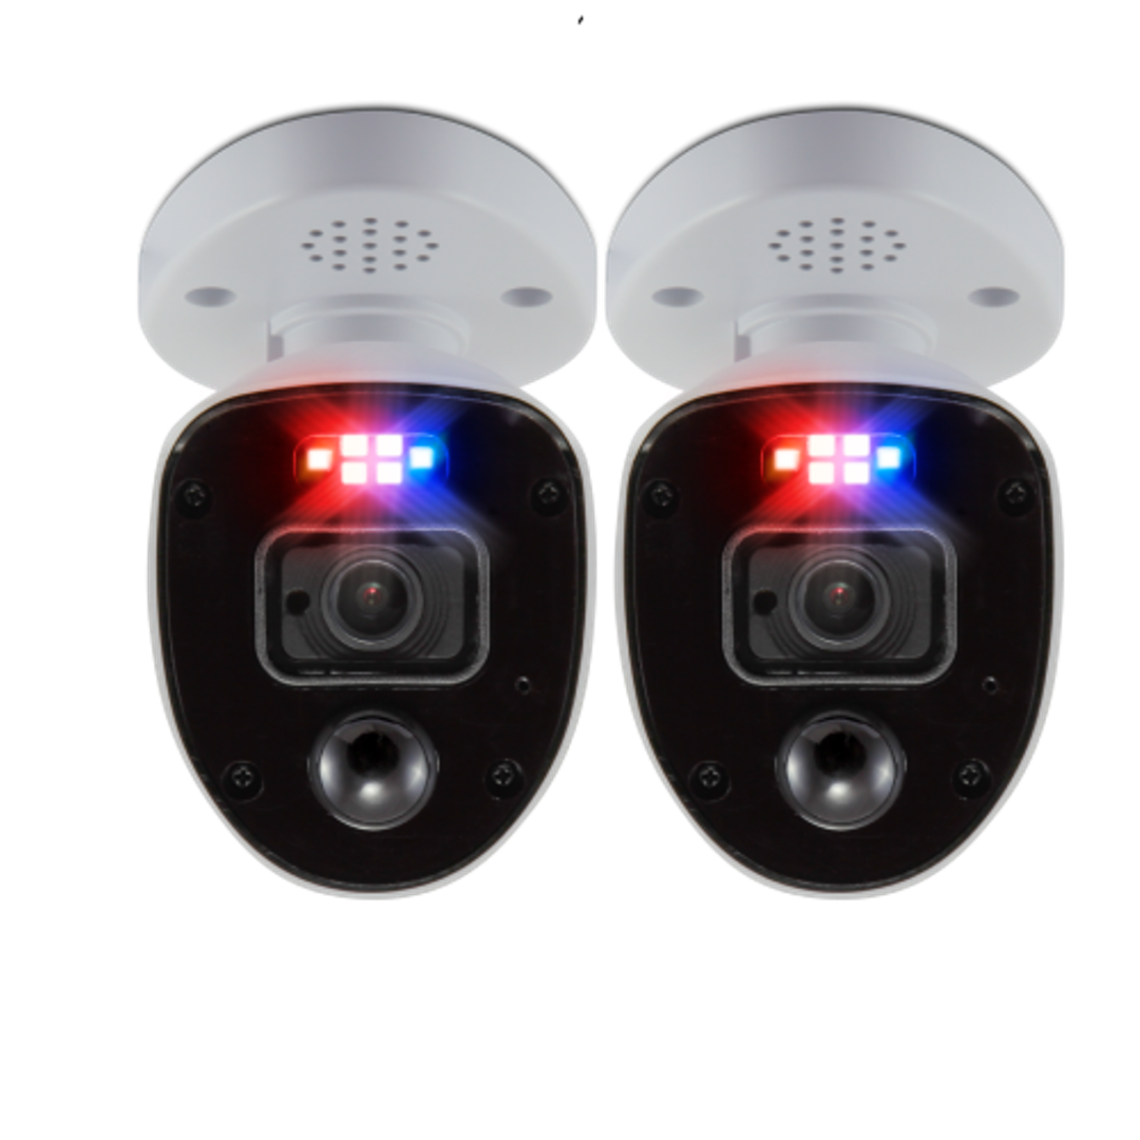 Swann - 2 caméras de sécurité Enforcer avec feux clignotants de type police et sirène - Caméra de surveillance connectée